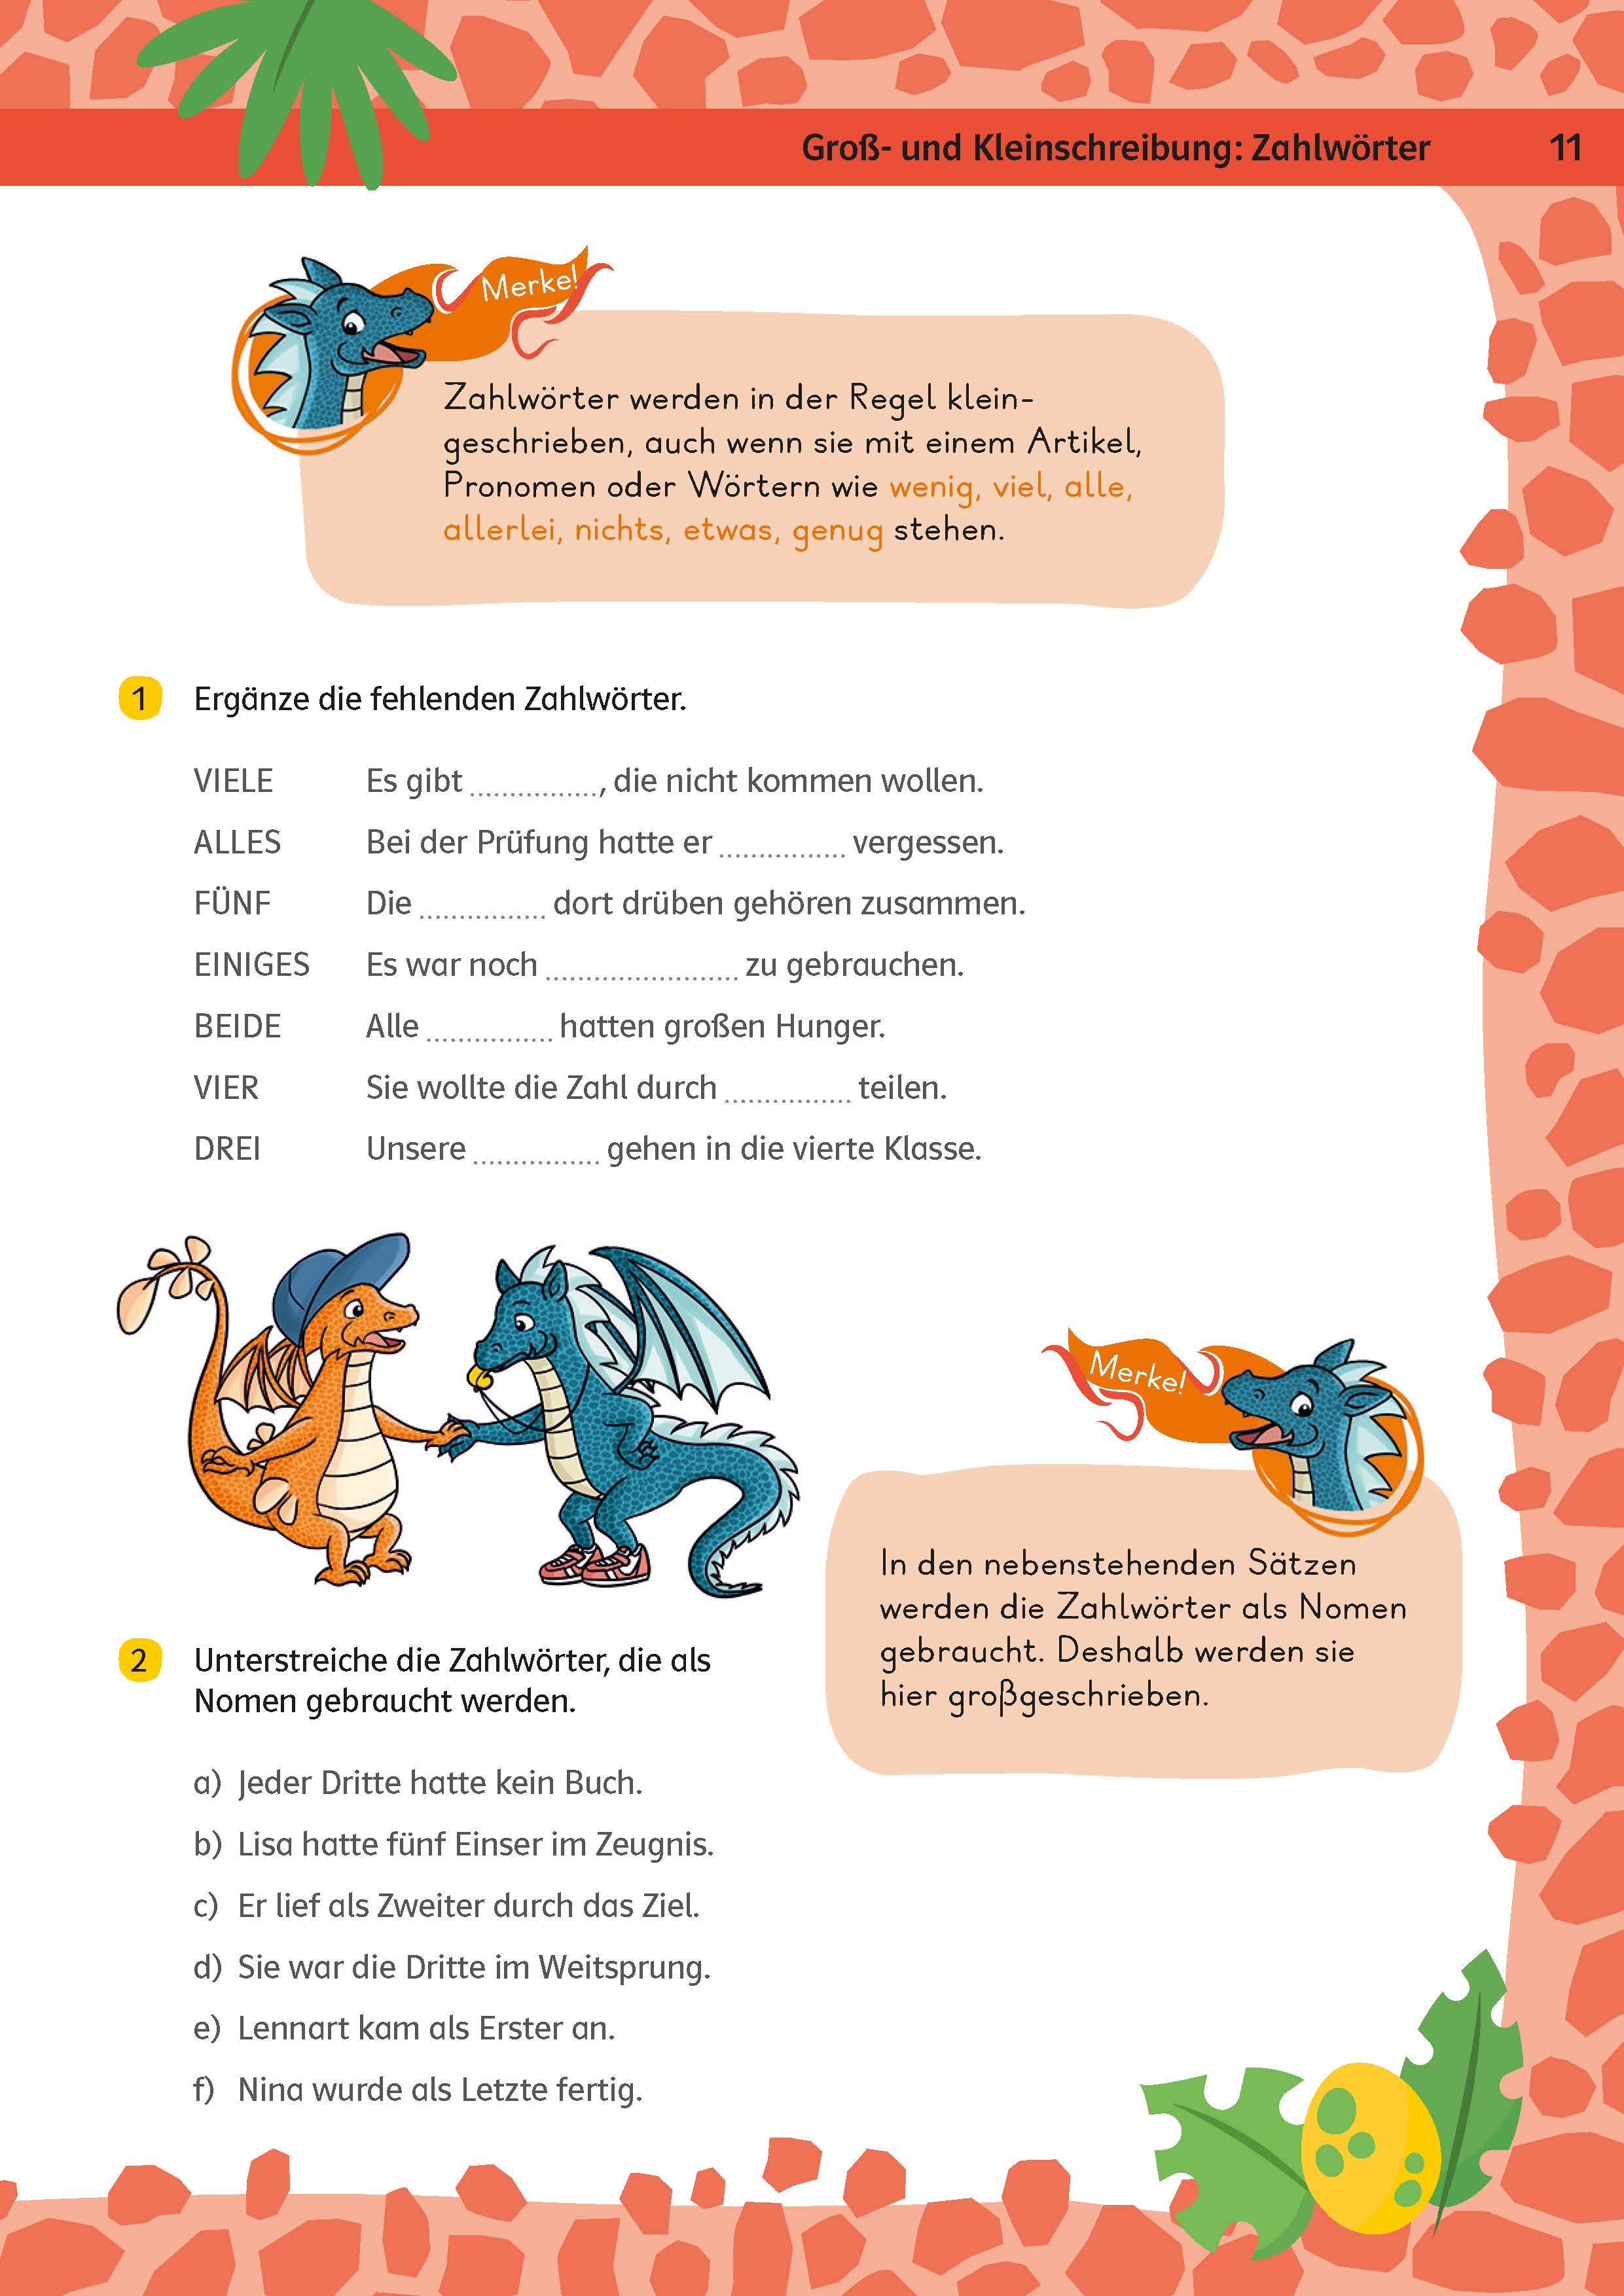 Klett Team Drachenstark: Das große Trainingsbuch Deutsch 4. Klasse